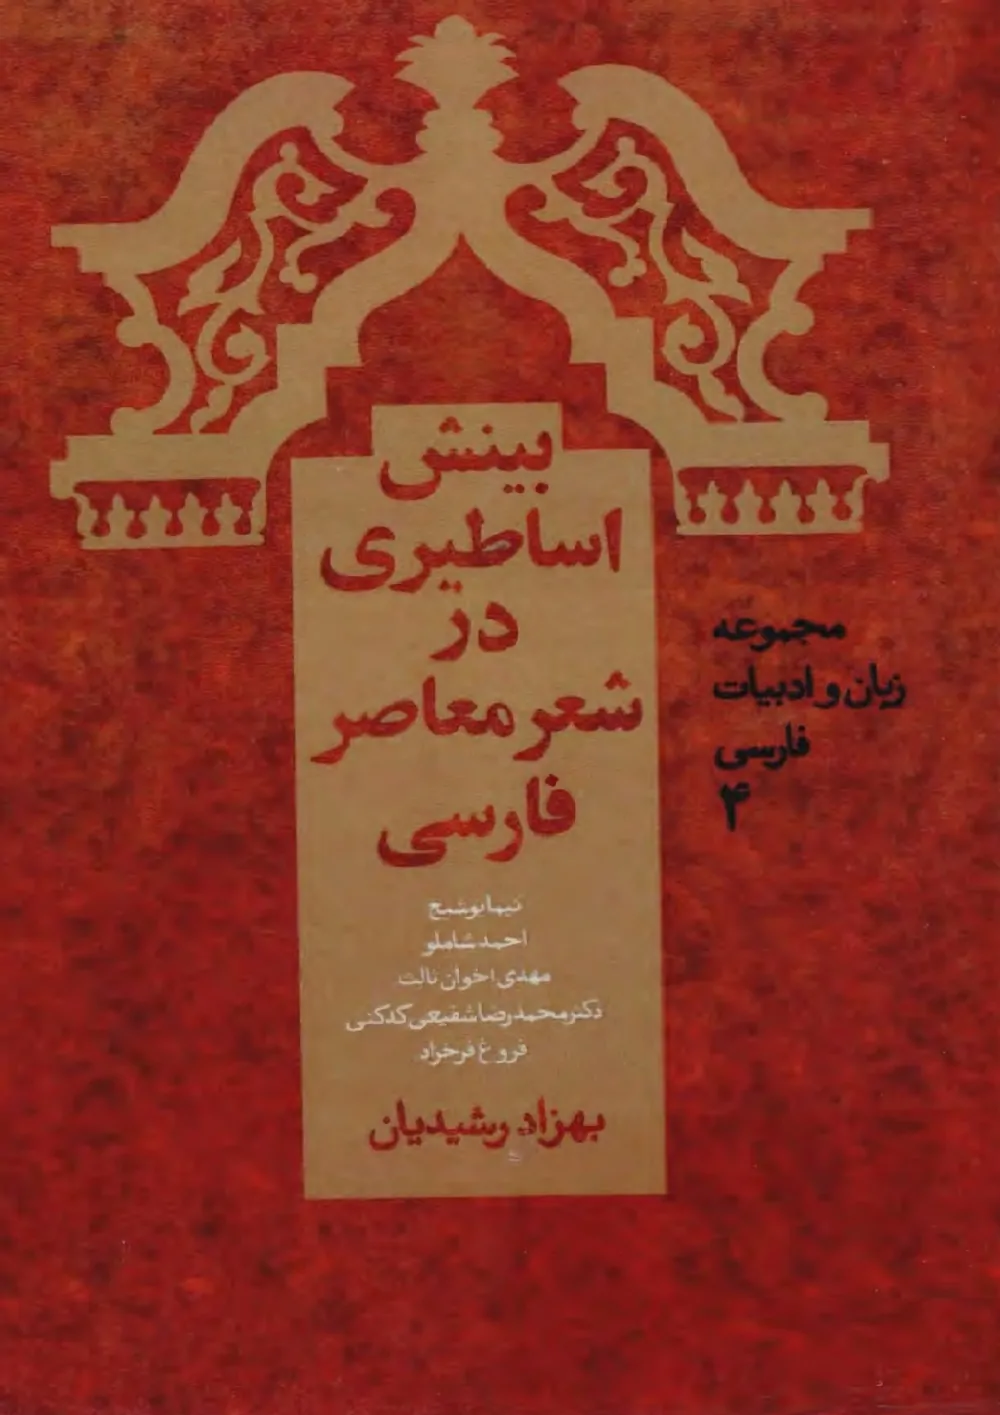 بینش اساطیری در شعر فارسی معاصر